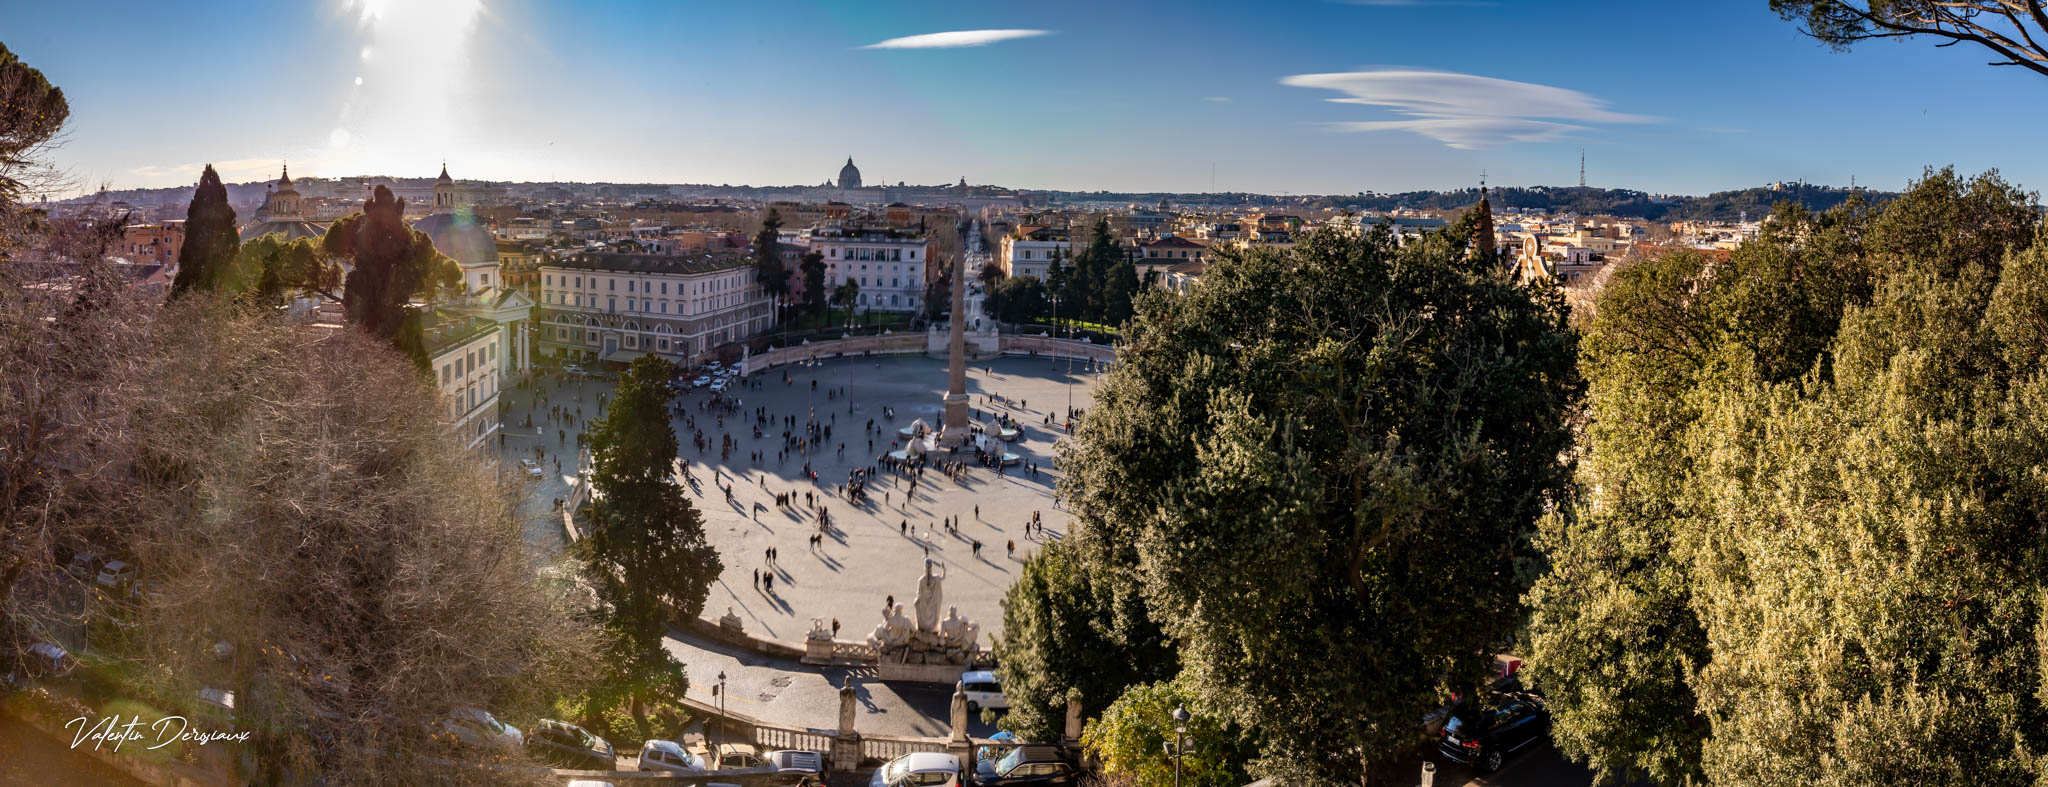 Piazza Del Popolo depuis Terrazza del Pincio